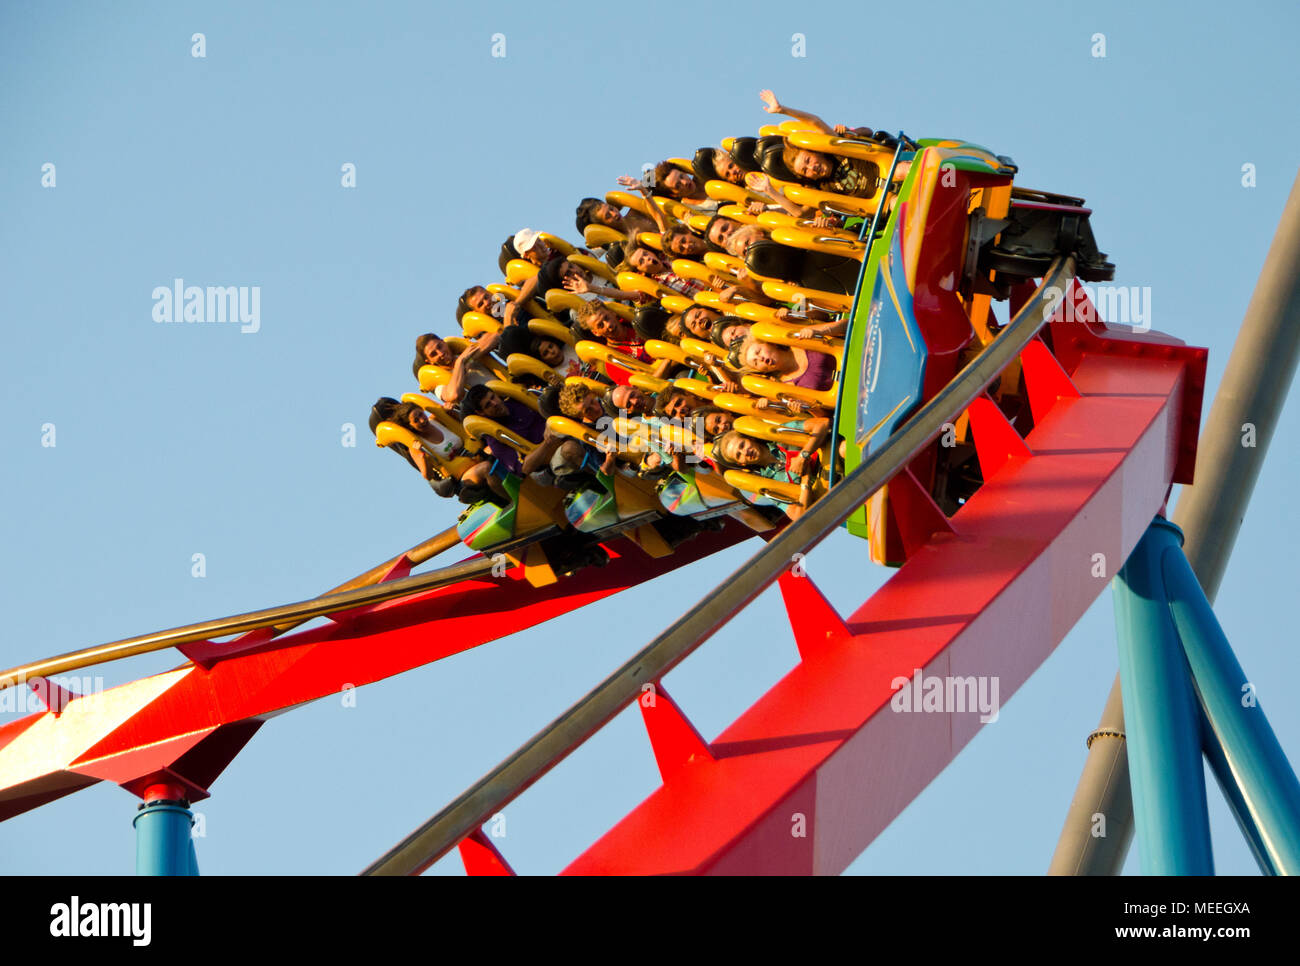 Barcelone, Espagne- 3 Août 2012 : les gens sur un Rollercoaster ride dans le parc d'attractions Port Aventura contre un ciel bleu à Barcelone, Espagne Banque D'Images